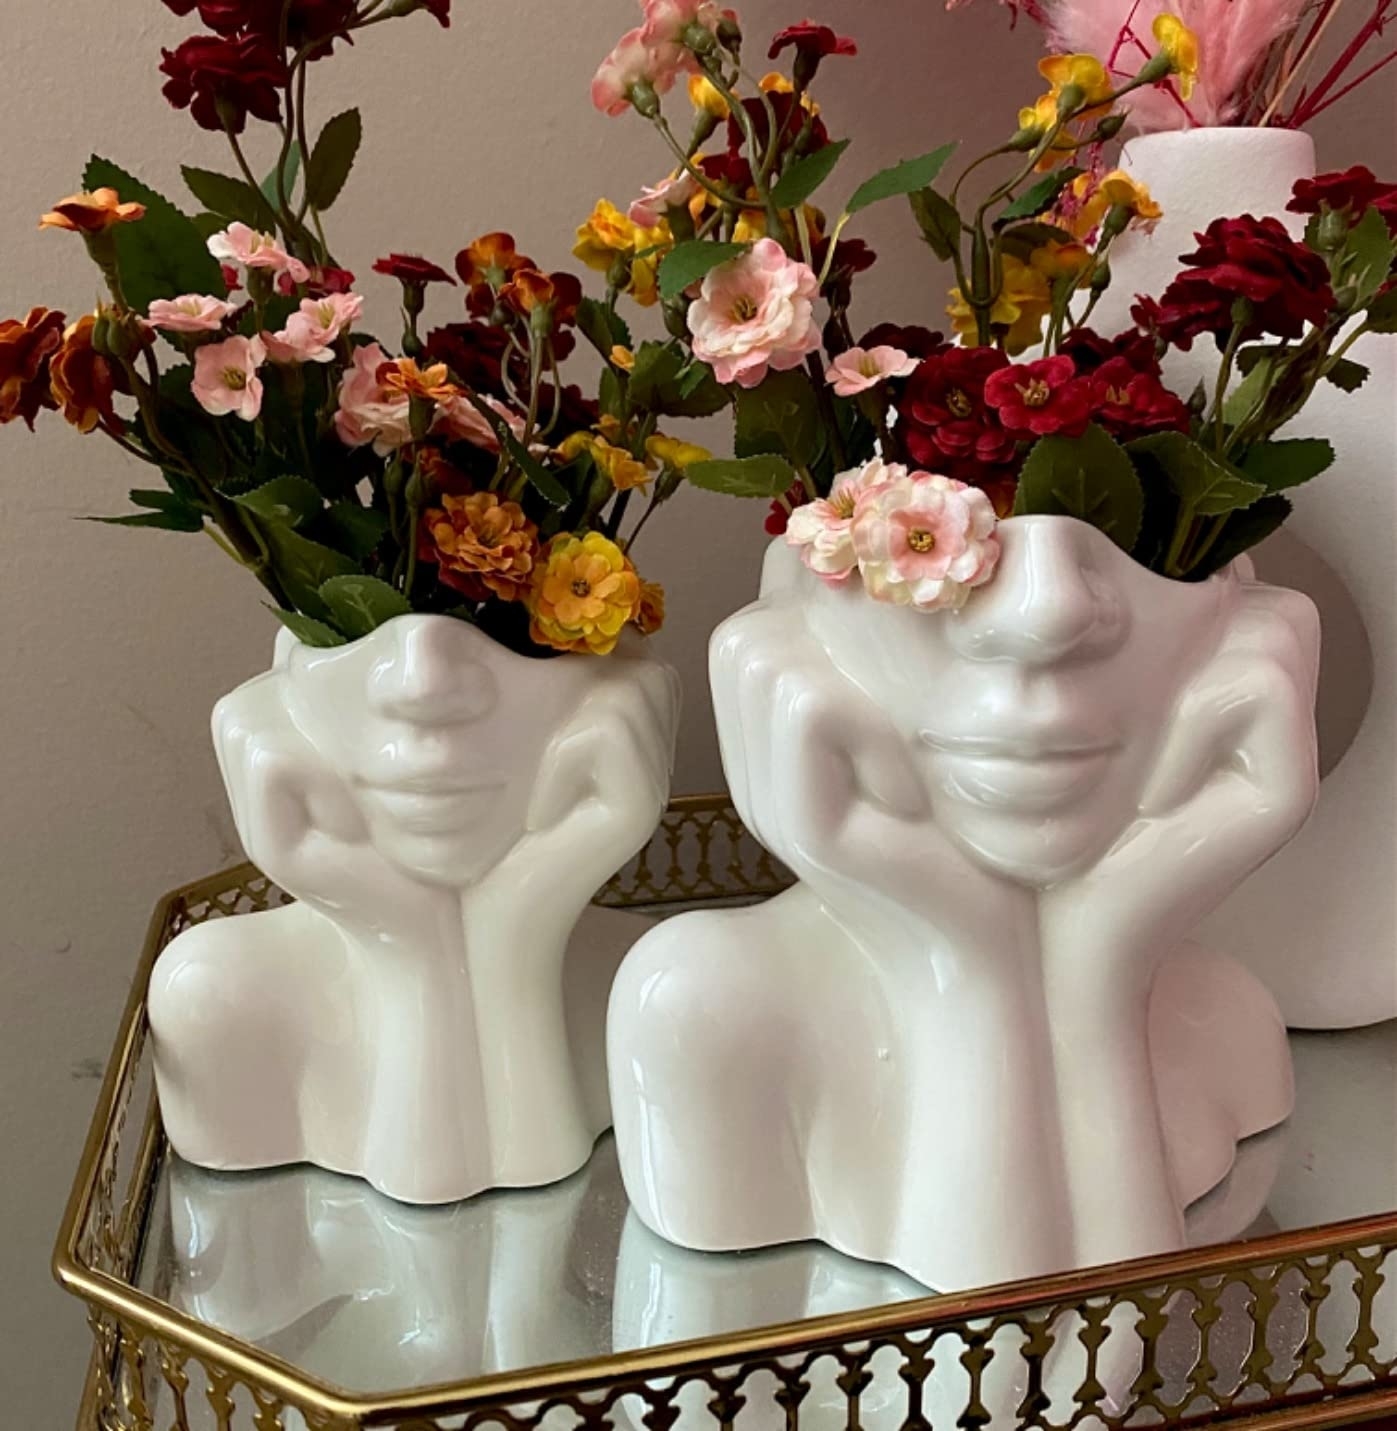 the ceramic head vases